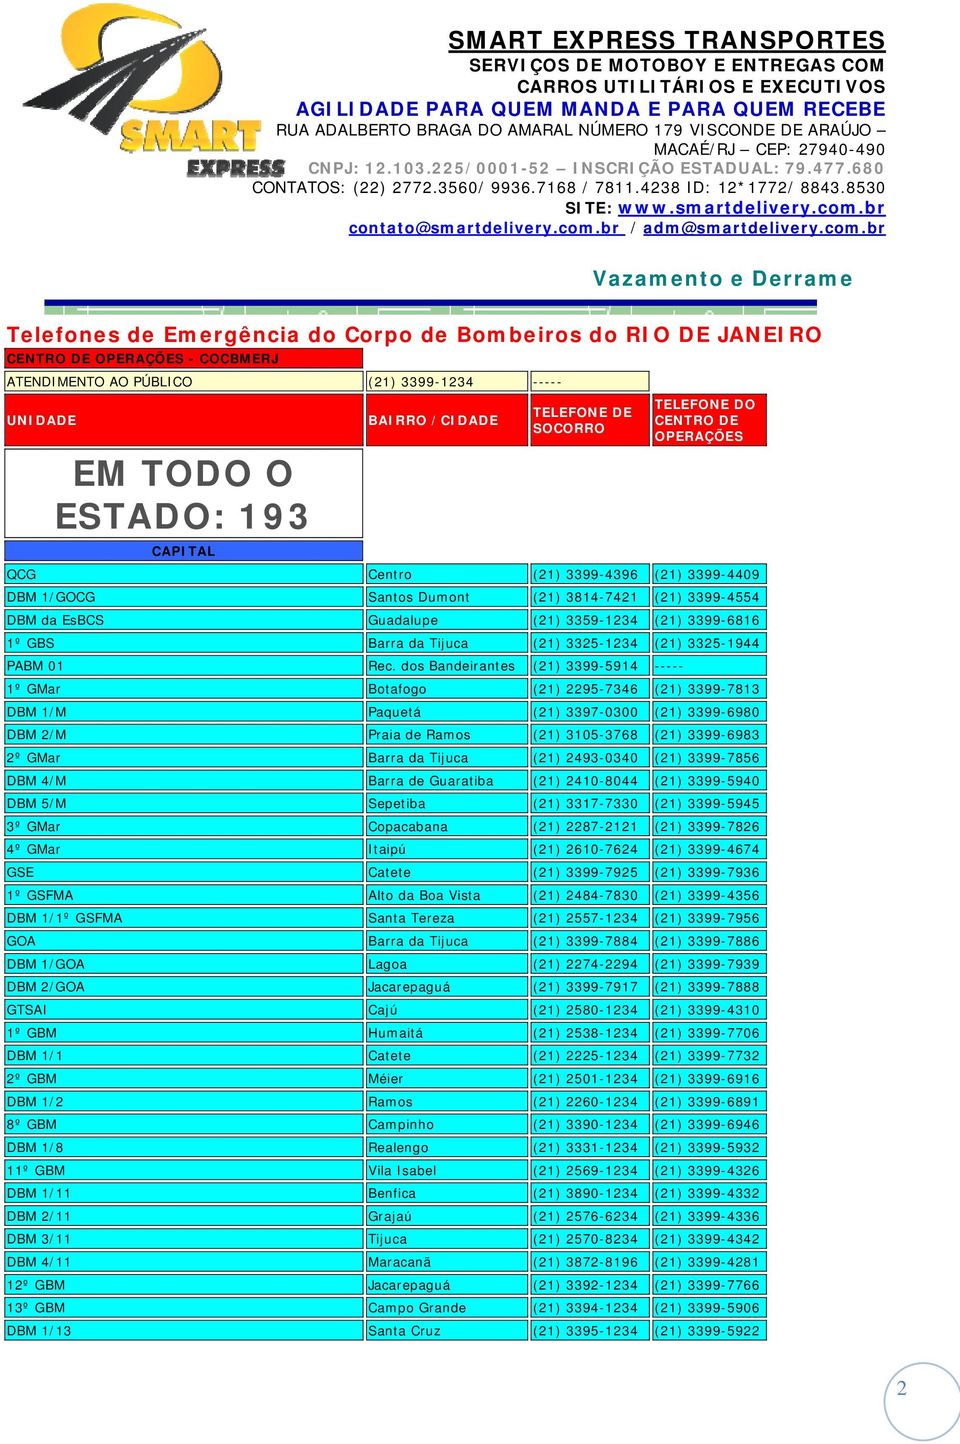 3399-6816 1º GBS Barra da Tijuca (21) 3325-1234 (21) 3325-1944 PABM 01 Rec.